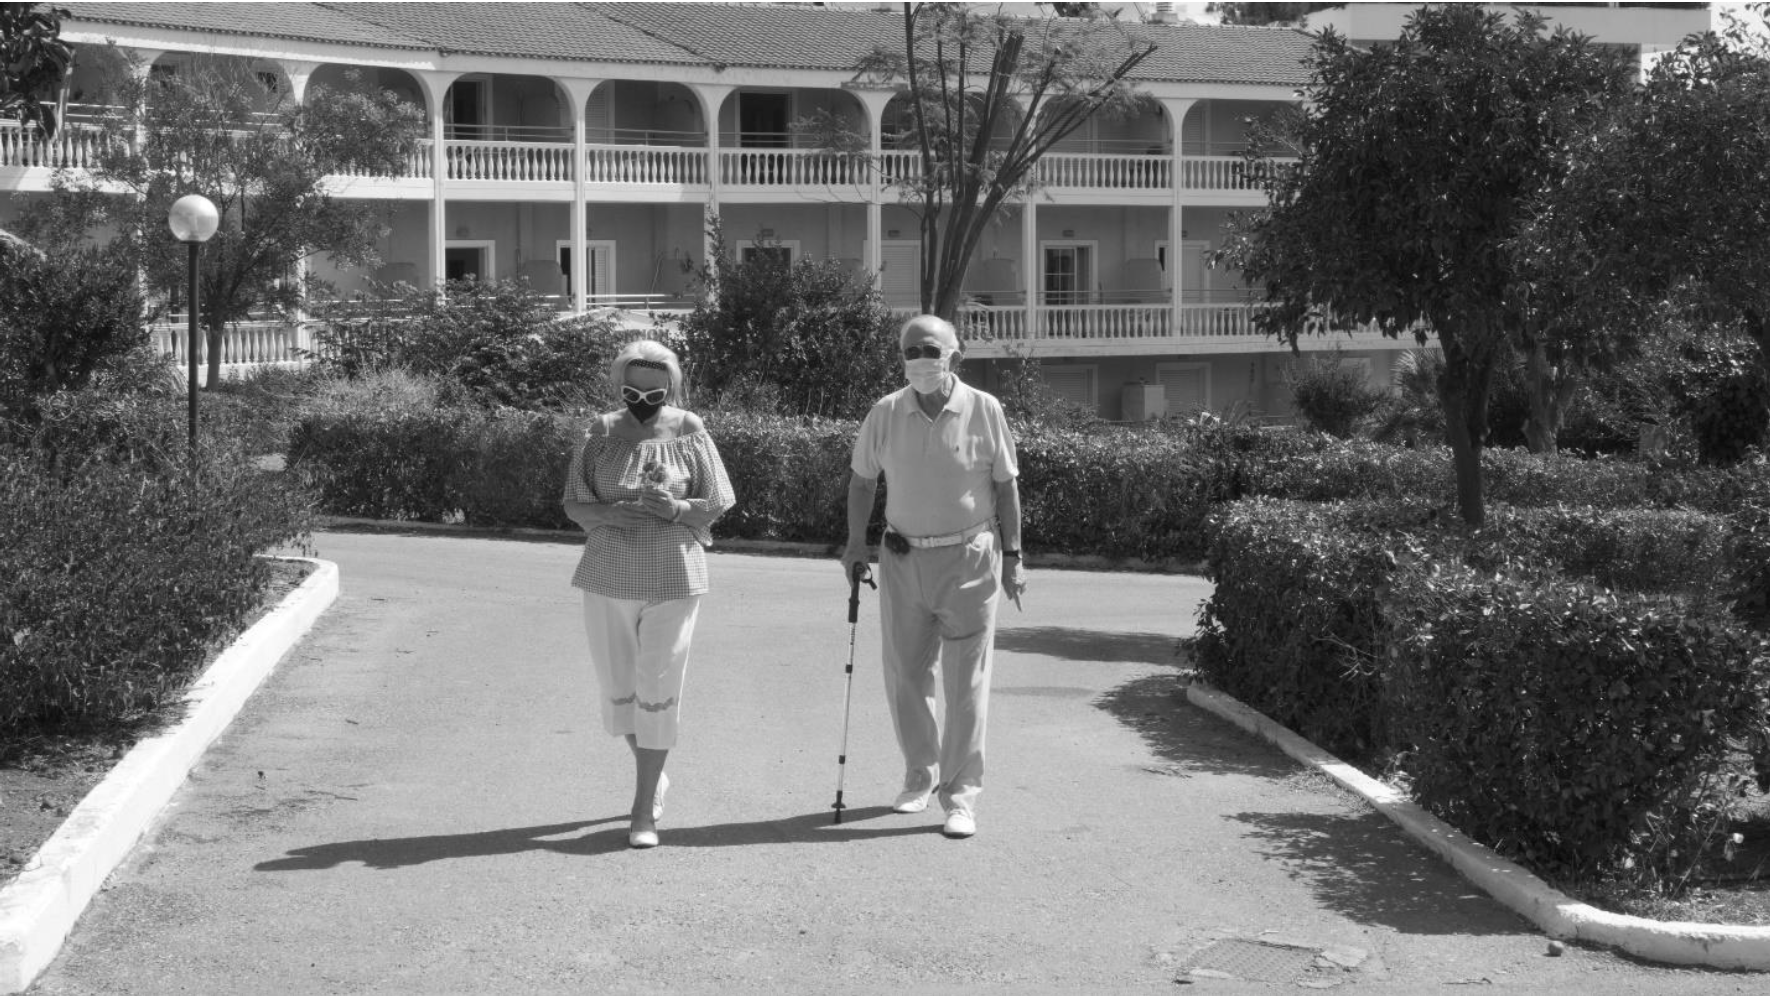 Ασπρόμαυρη εικόνα δύο ηλικιωμένων, ενός άντρα και μίας γυναίκας, να περπατάνε σε ανοιχτό χώρο φορώντας μάσκες για την προστασία από τον ιό